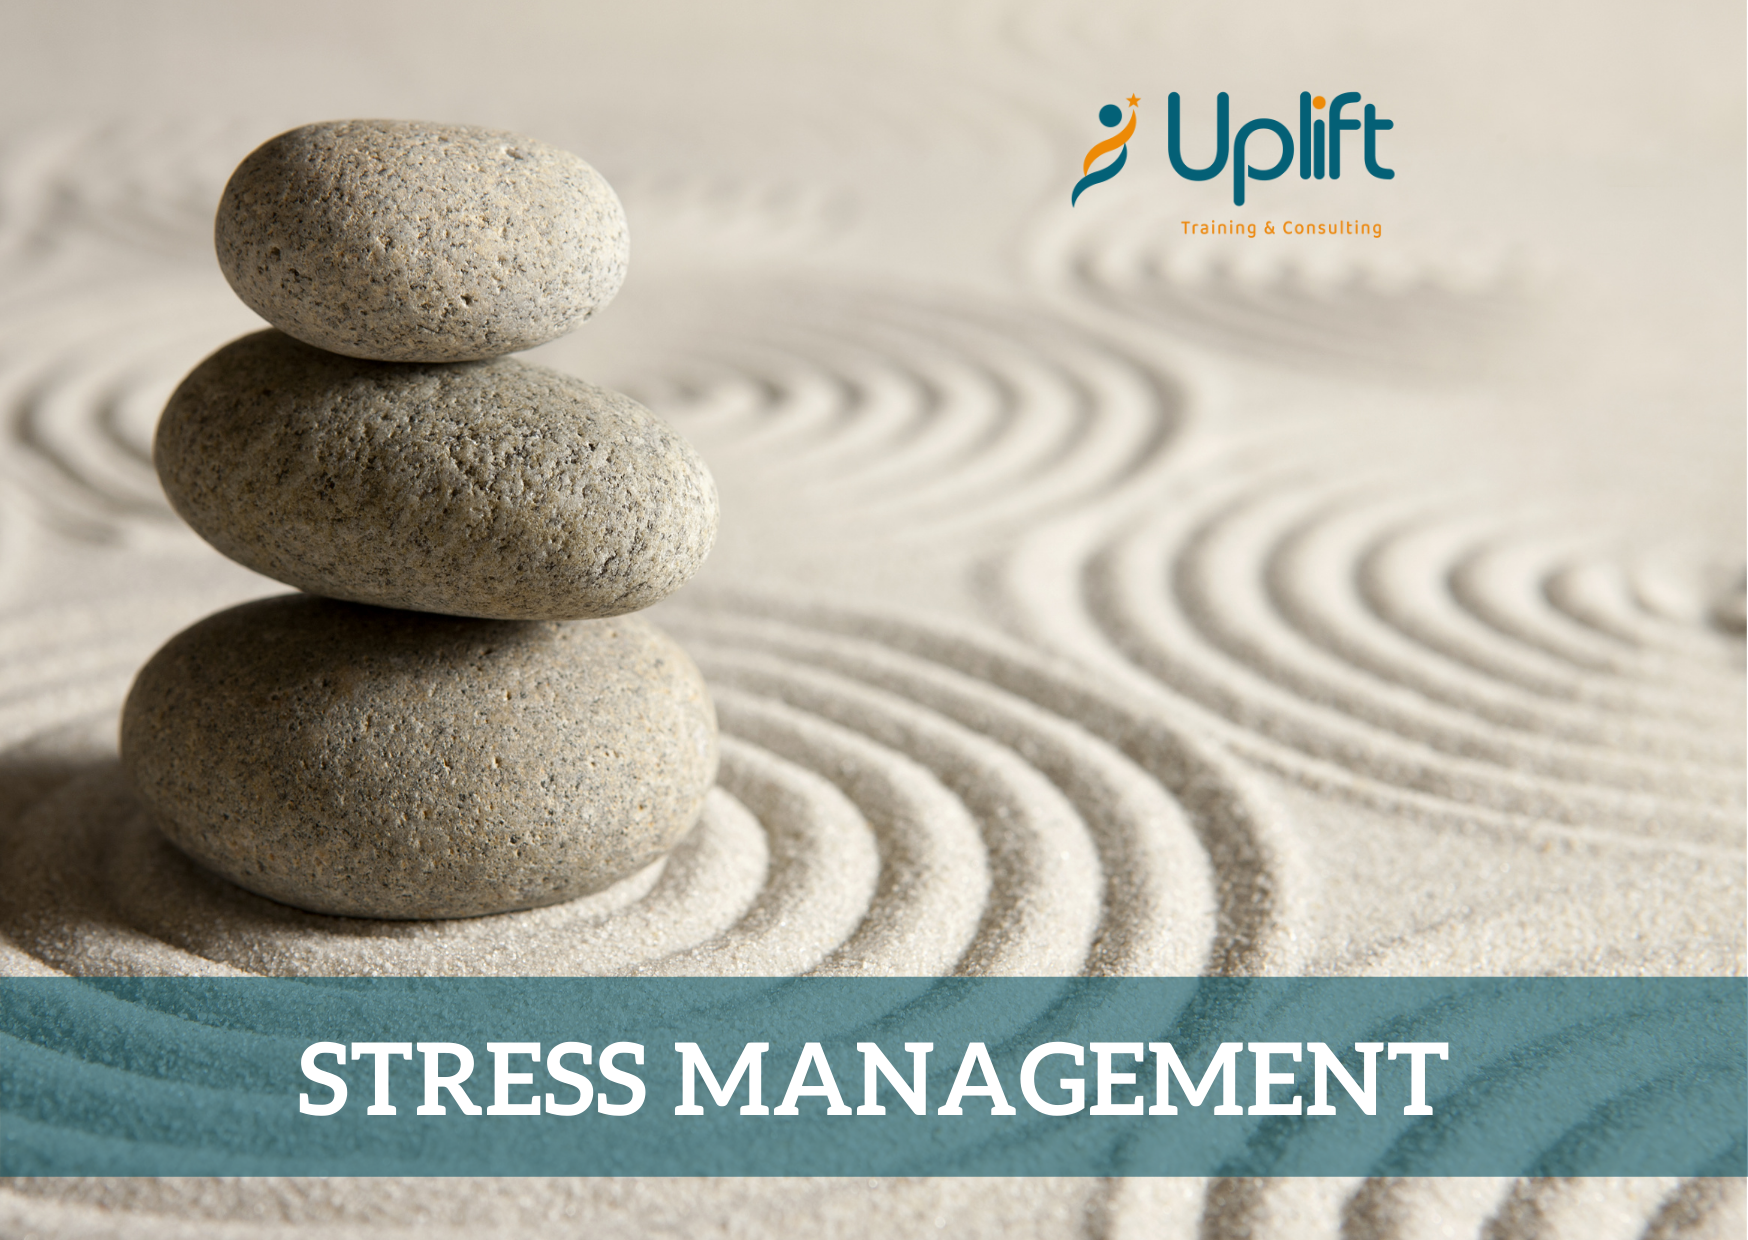 Quyền lợi của việc nghỉ ngơi ngắn và thư giãn trong việc quản lý căng thẳng?
